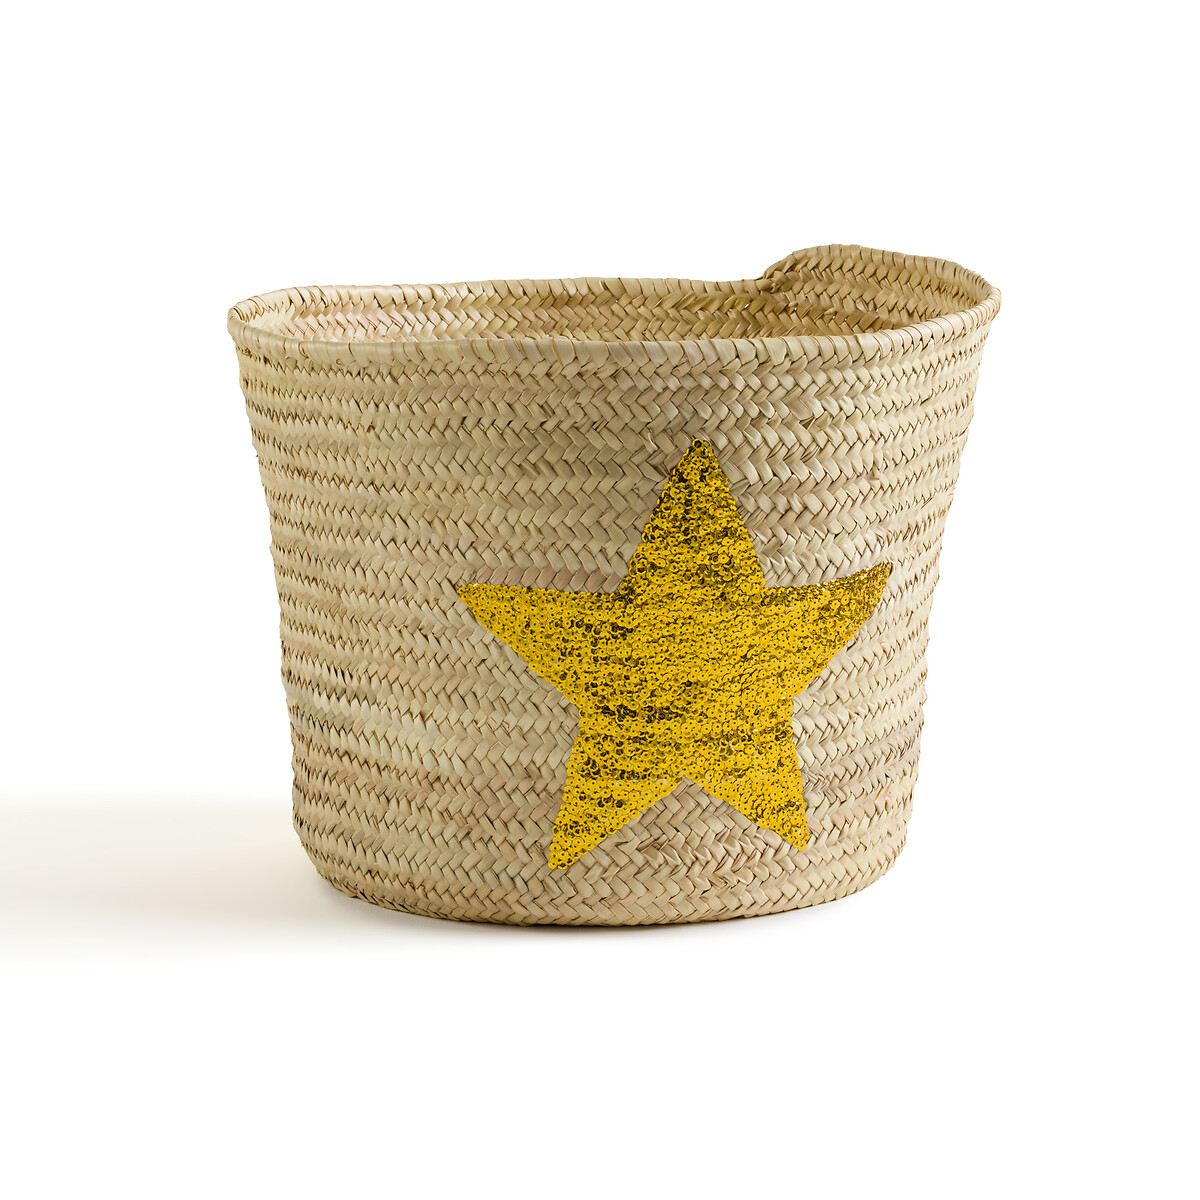 Корзина с рисунком звезда из пальмовых листьев Starna единый размер бежевый корзина kotak единый размер бежевый